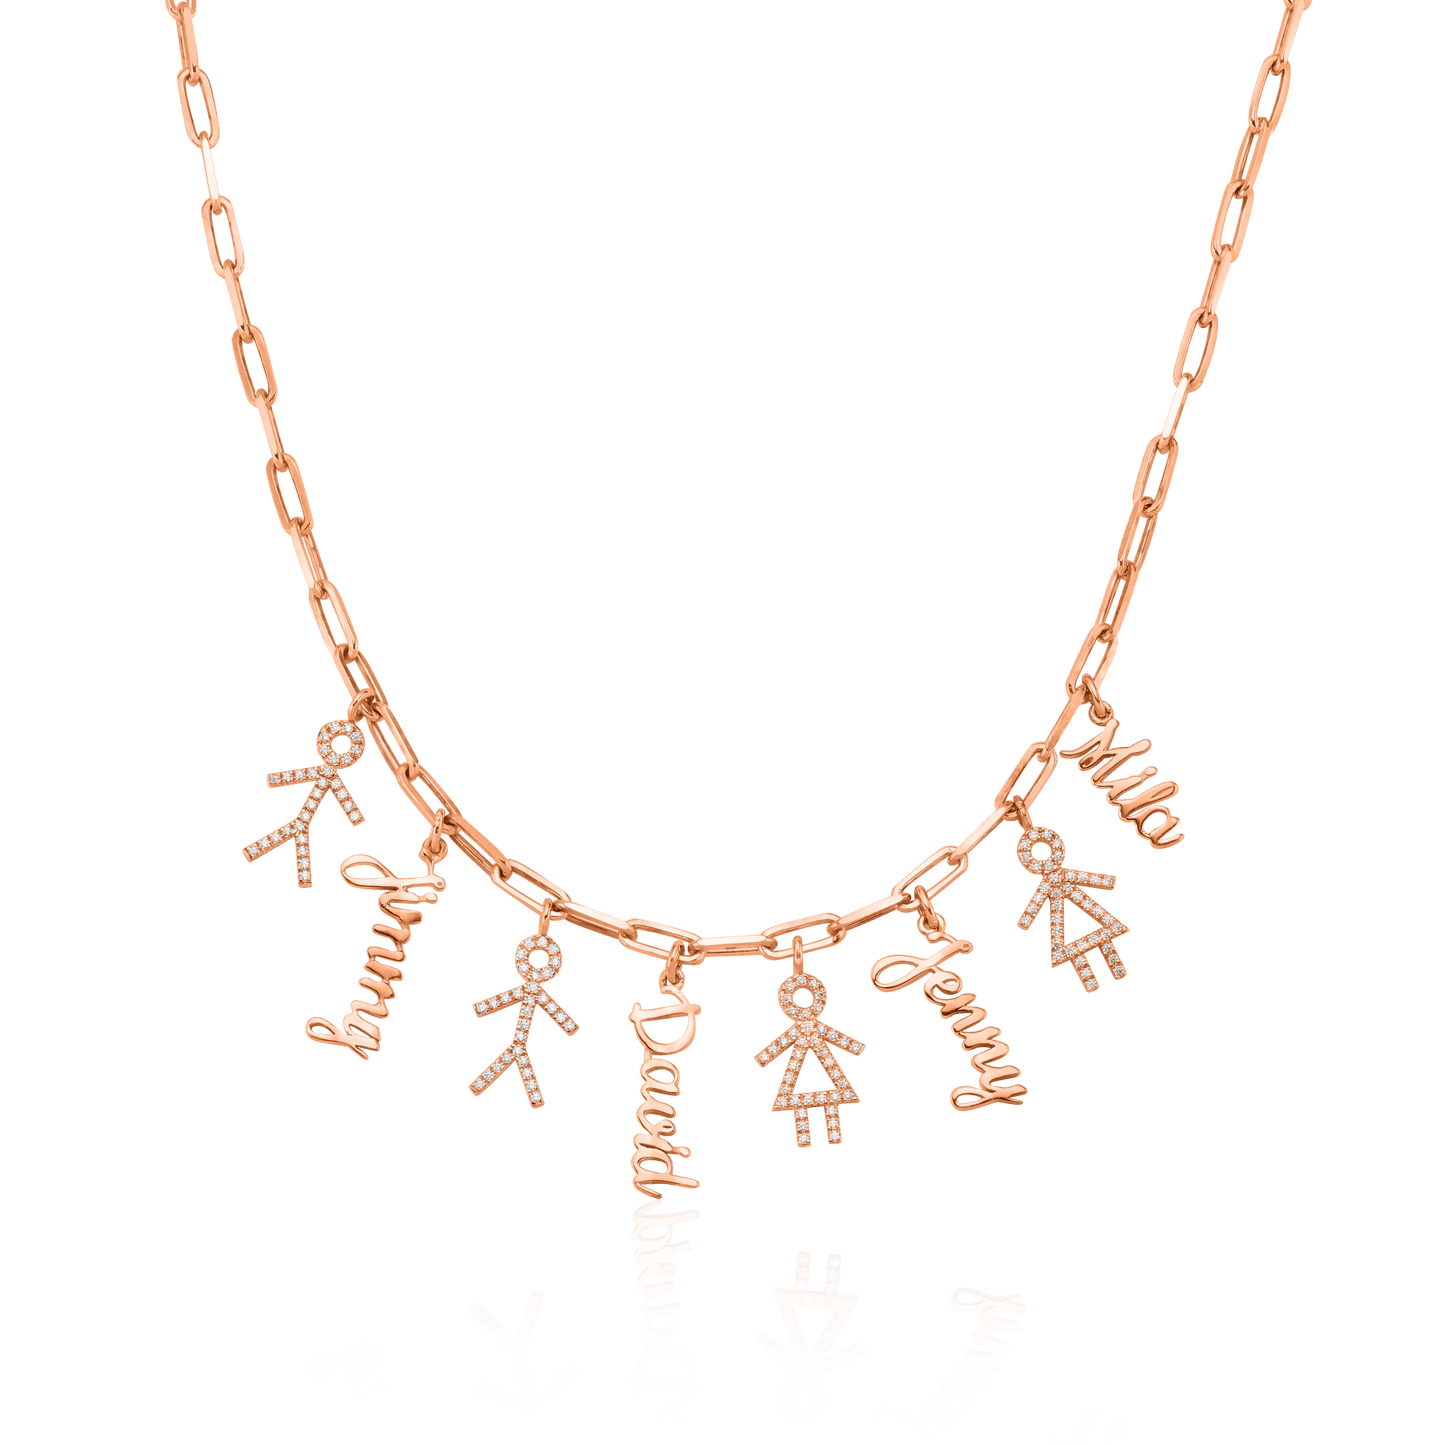 Kith & Kin Necklace - 18K Gold Vermeil Necklaces Gold Vermeil 